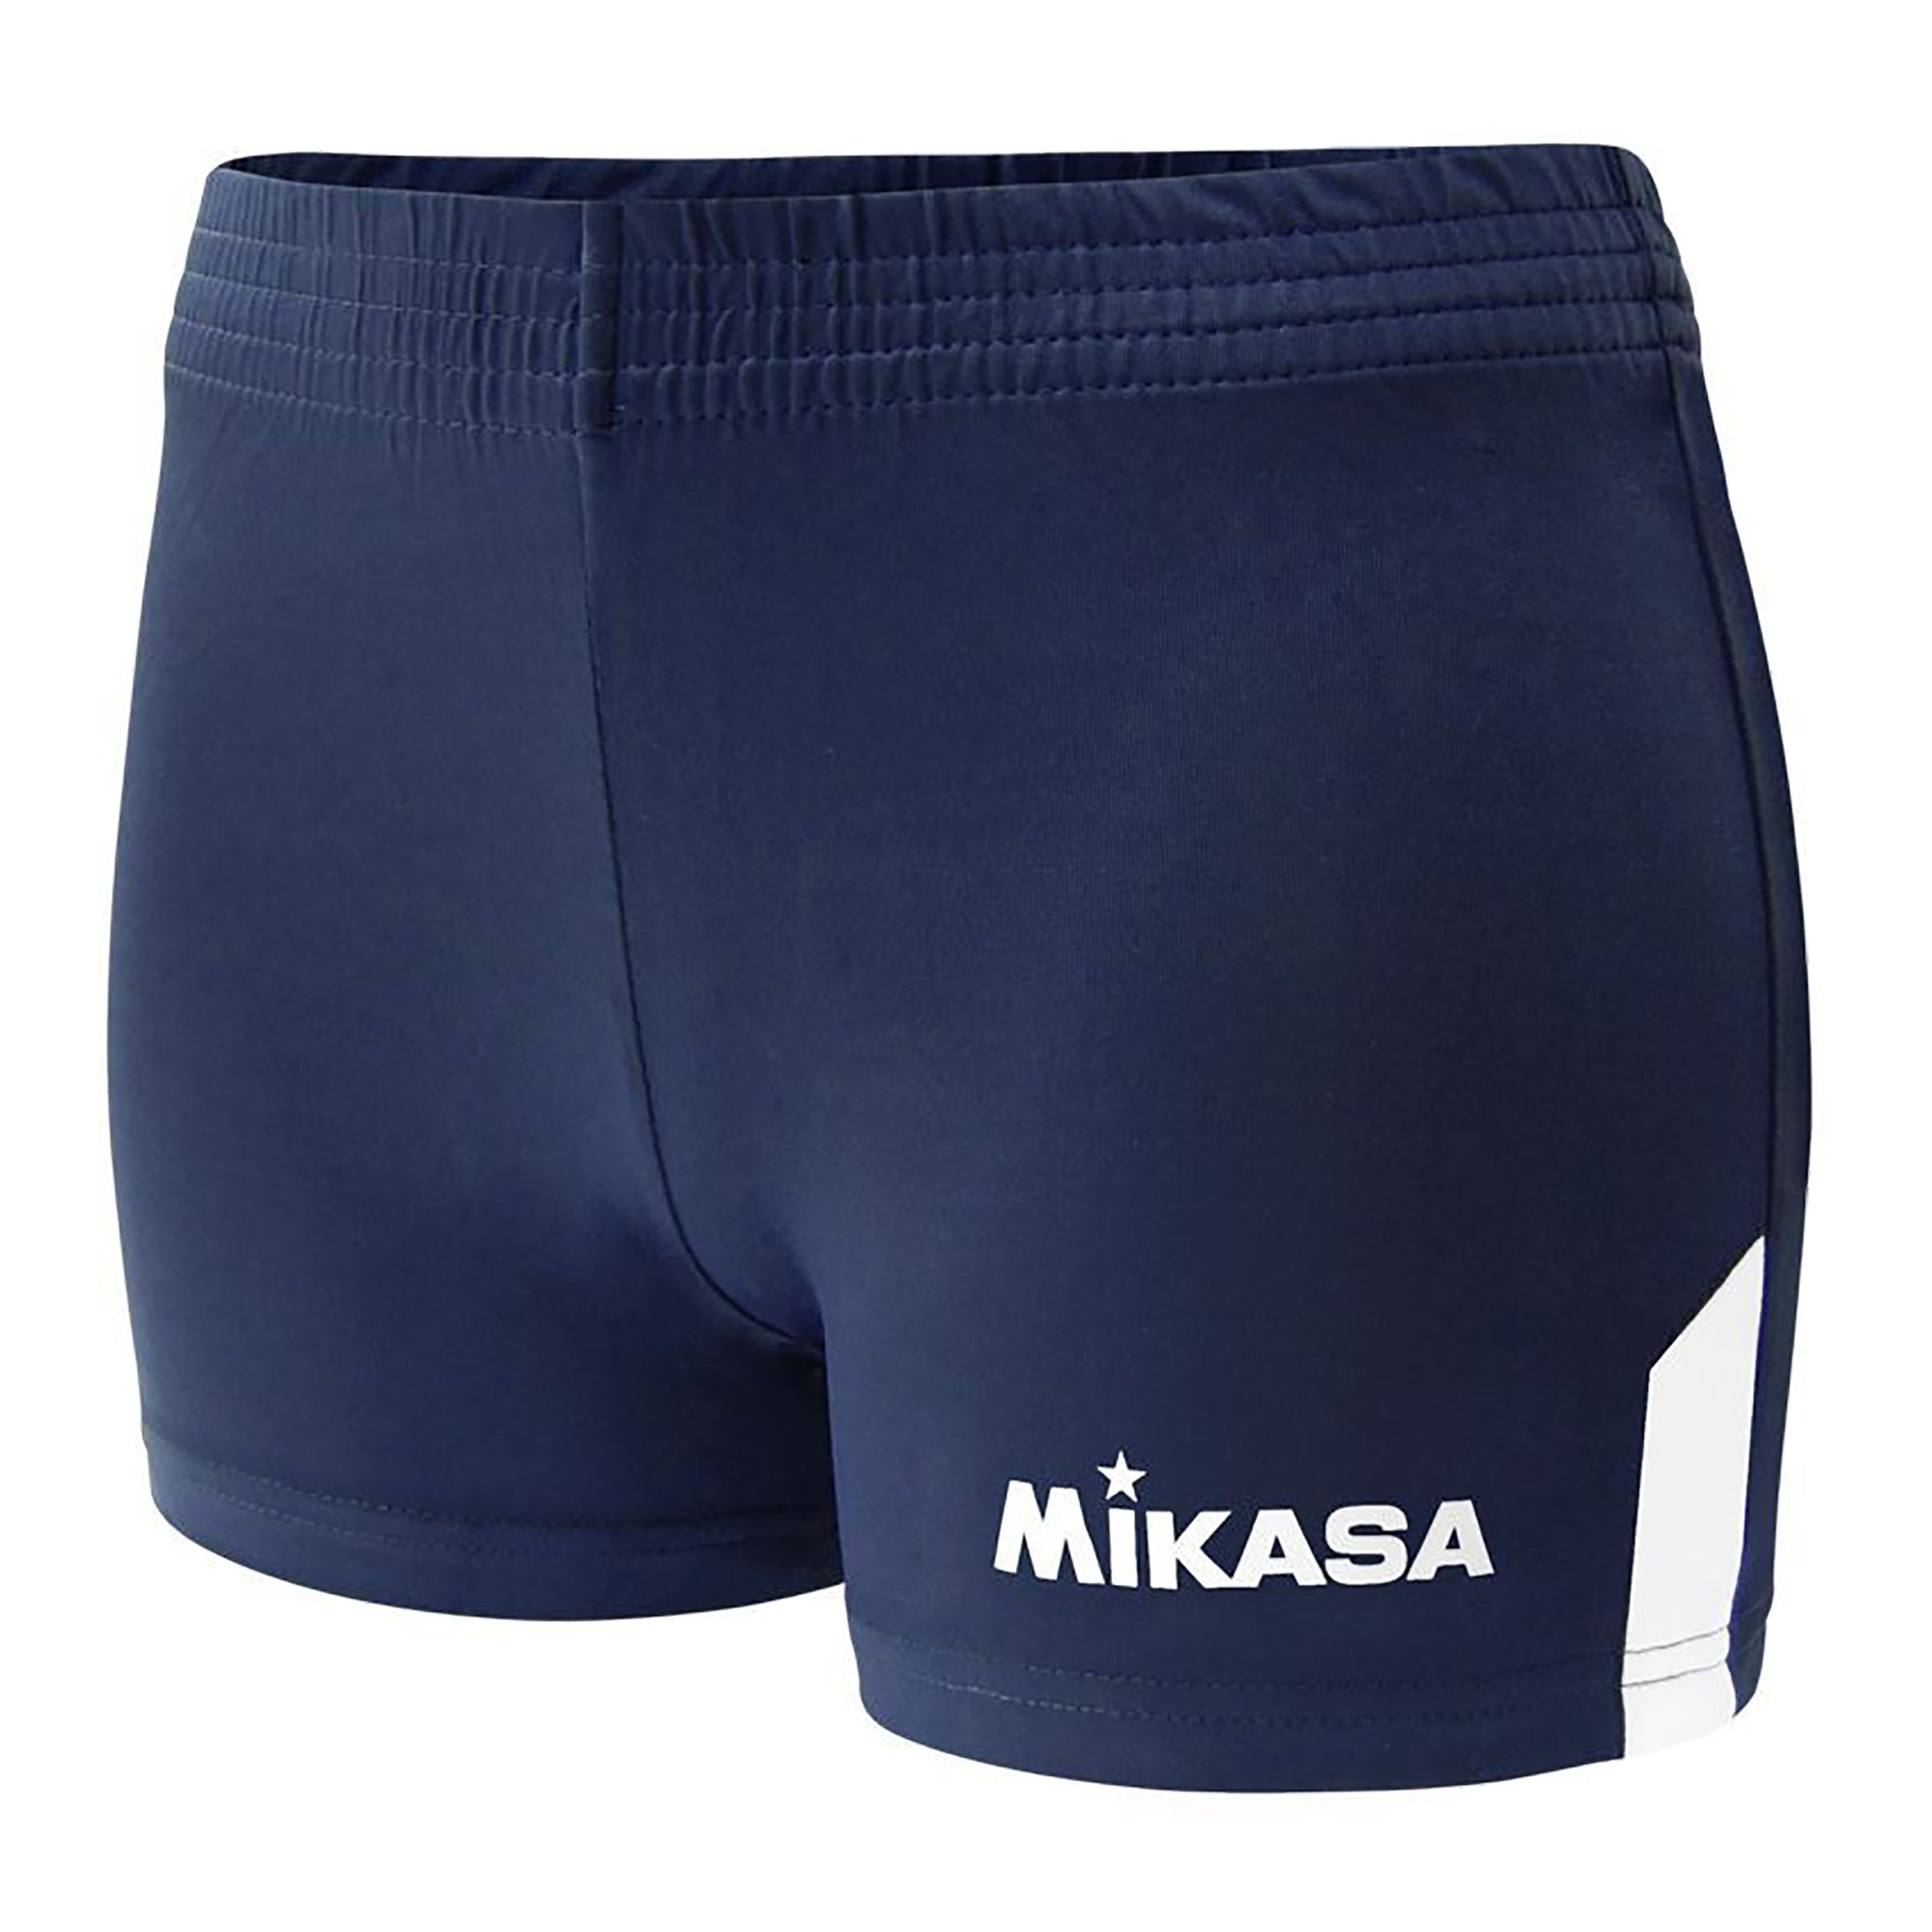 Mikasa Damen High Performance Shorts